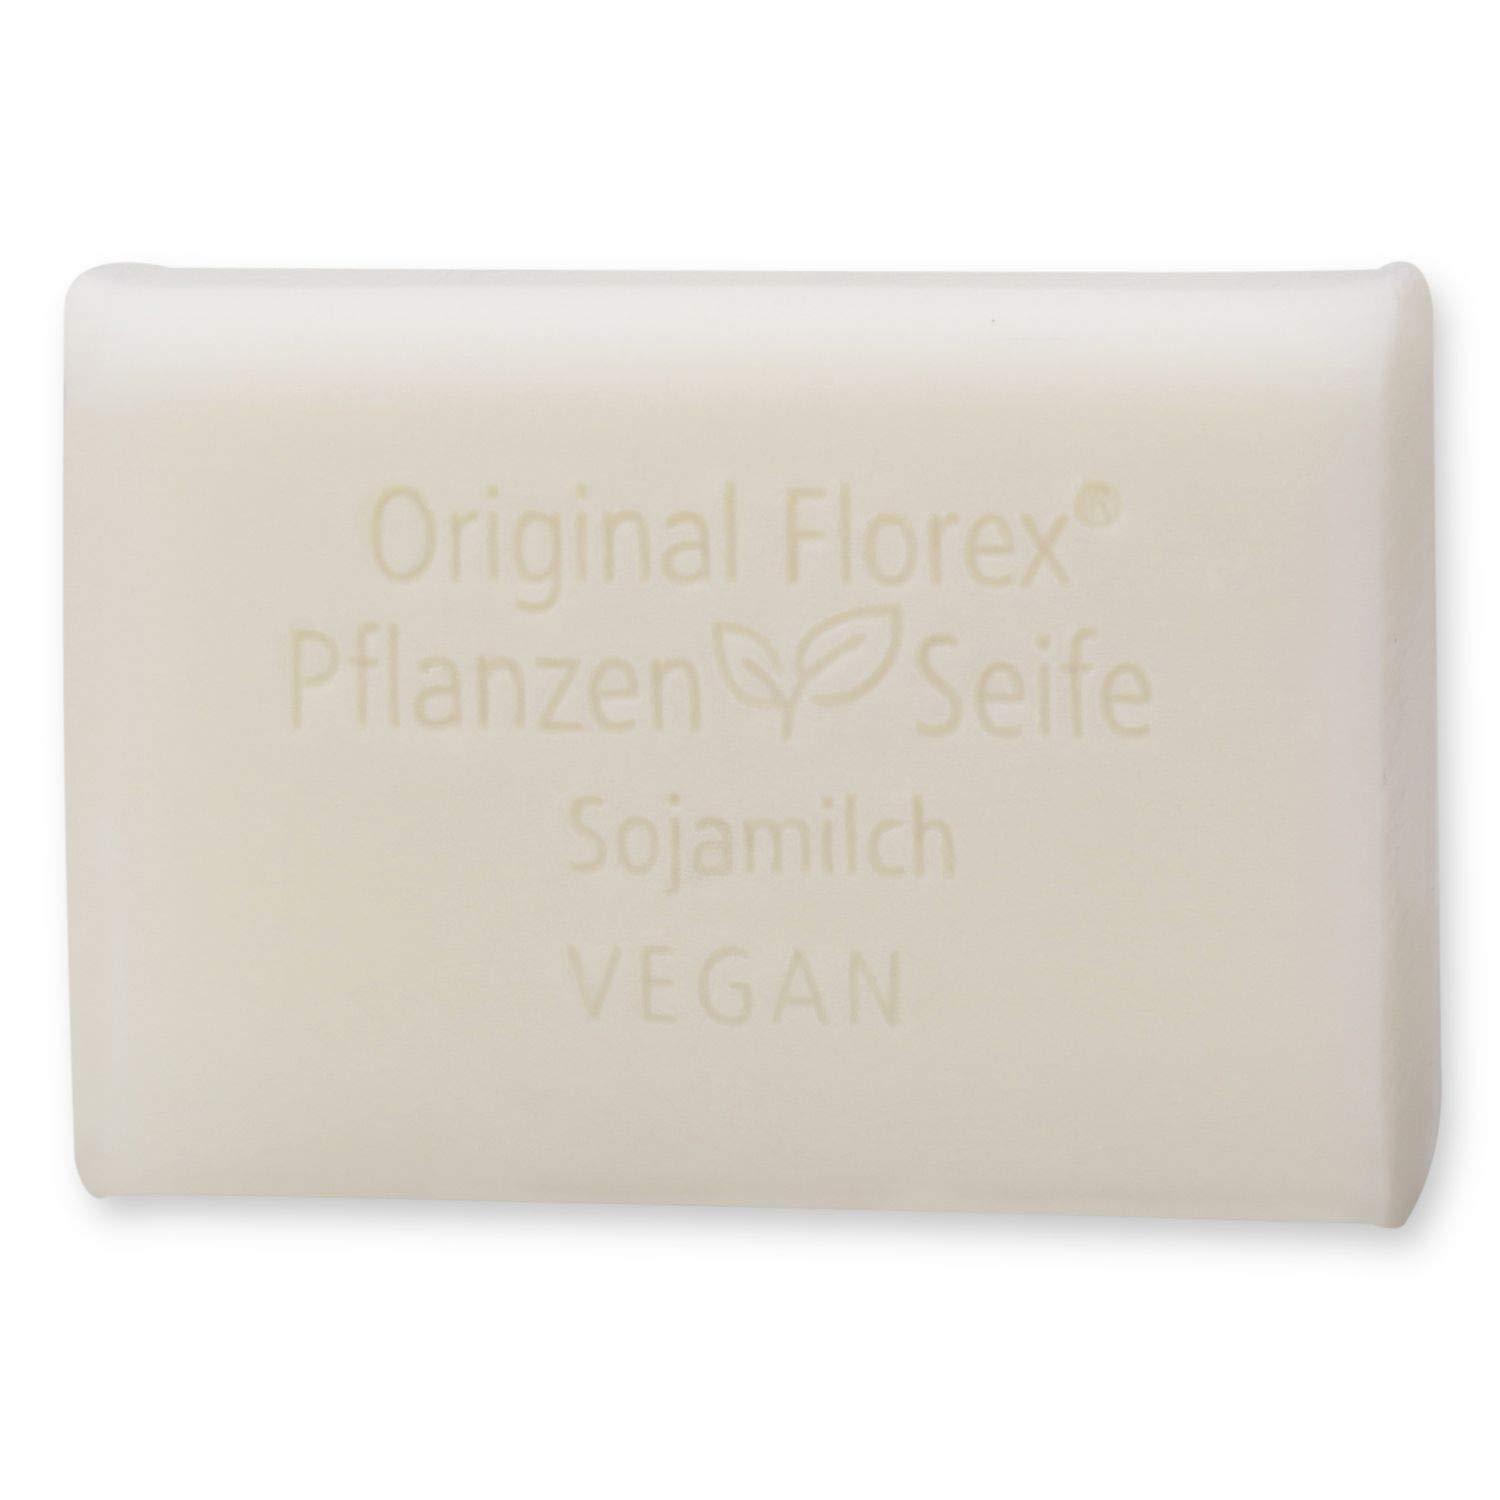 Florex Vegane Pflanzenölseife - Sojamilch - cremige Öle verwöhnen und pflegen die Haut 100 g